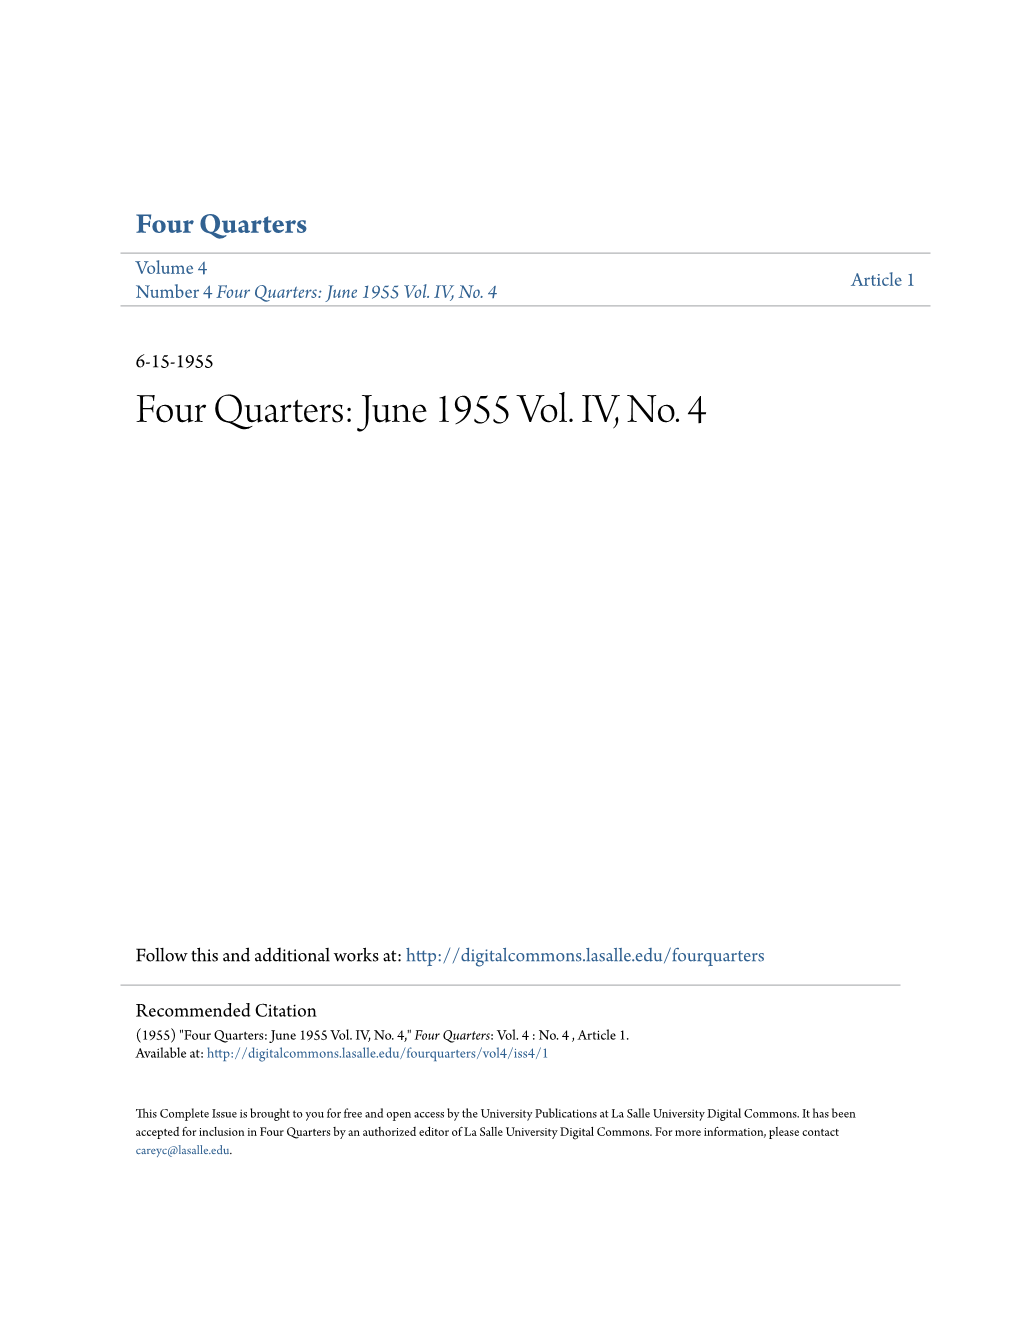 Four Quarters: June 1955 Vol. IV, No. 4